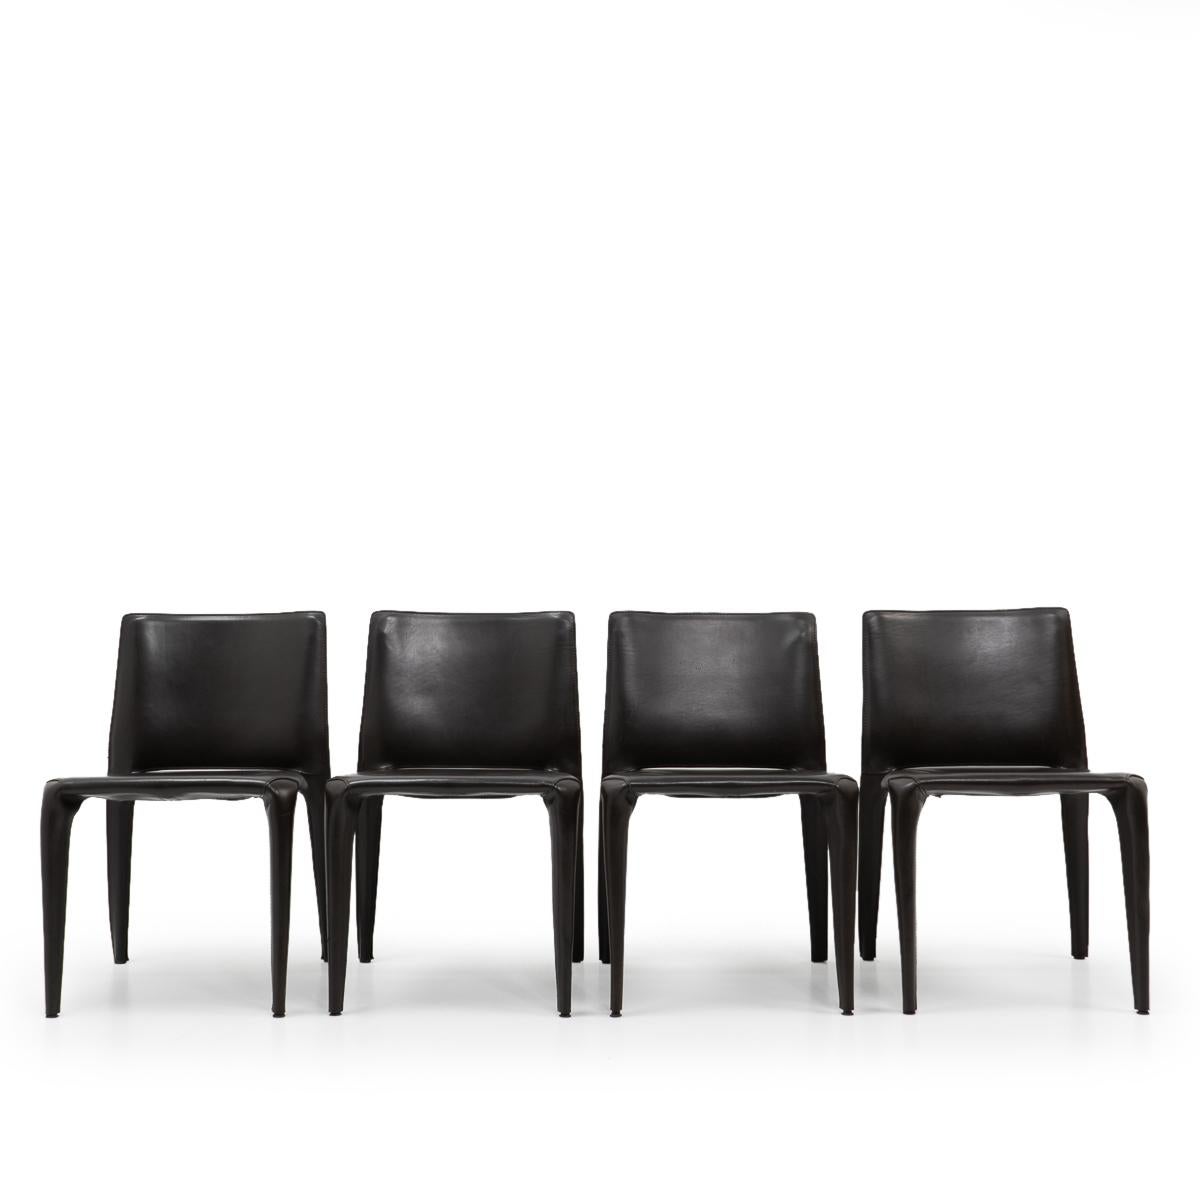 Set aus vier Bull-Esszimmerstühlen aus dunklem BROWN-Leder von Mario Bellini für Cassina.

Der Bull-Stuhl besteht aus einem Rohrrahmen, der mit dickem Sattelleder überzogen ist. Die Lederhaut wird mit Reißverschlüssen an den Innenseiten der Beine